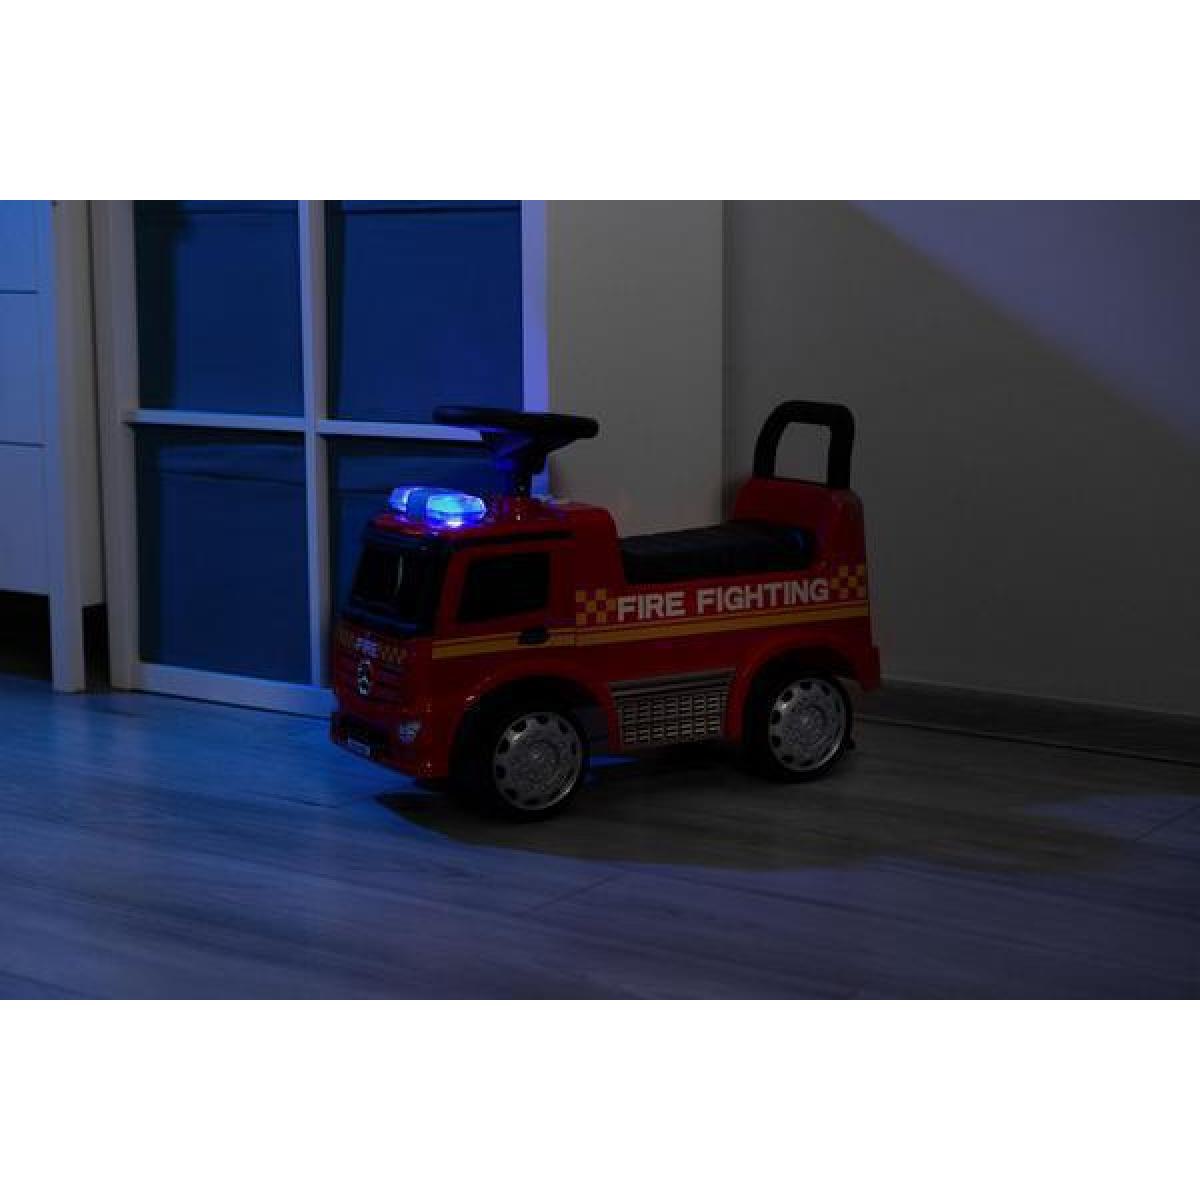 Παιδικό Αμαξάκι - Περπατούρα Ride on Car Πυροσβεστικό Όχημα Mercedes-Benz Licenced Product Toyz By Caretero Κόκκινο